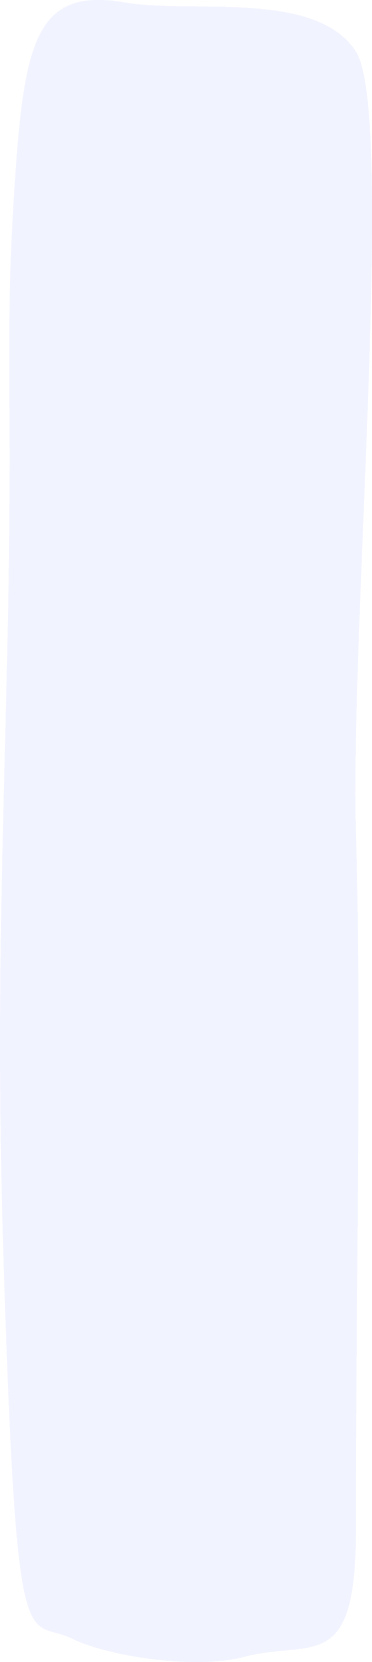 Forma geométrica irregular que compõe o background da seção